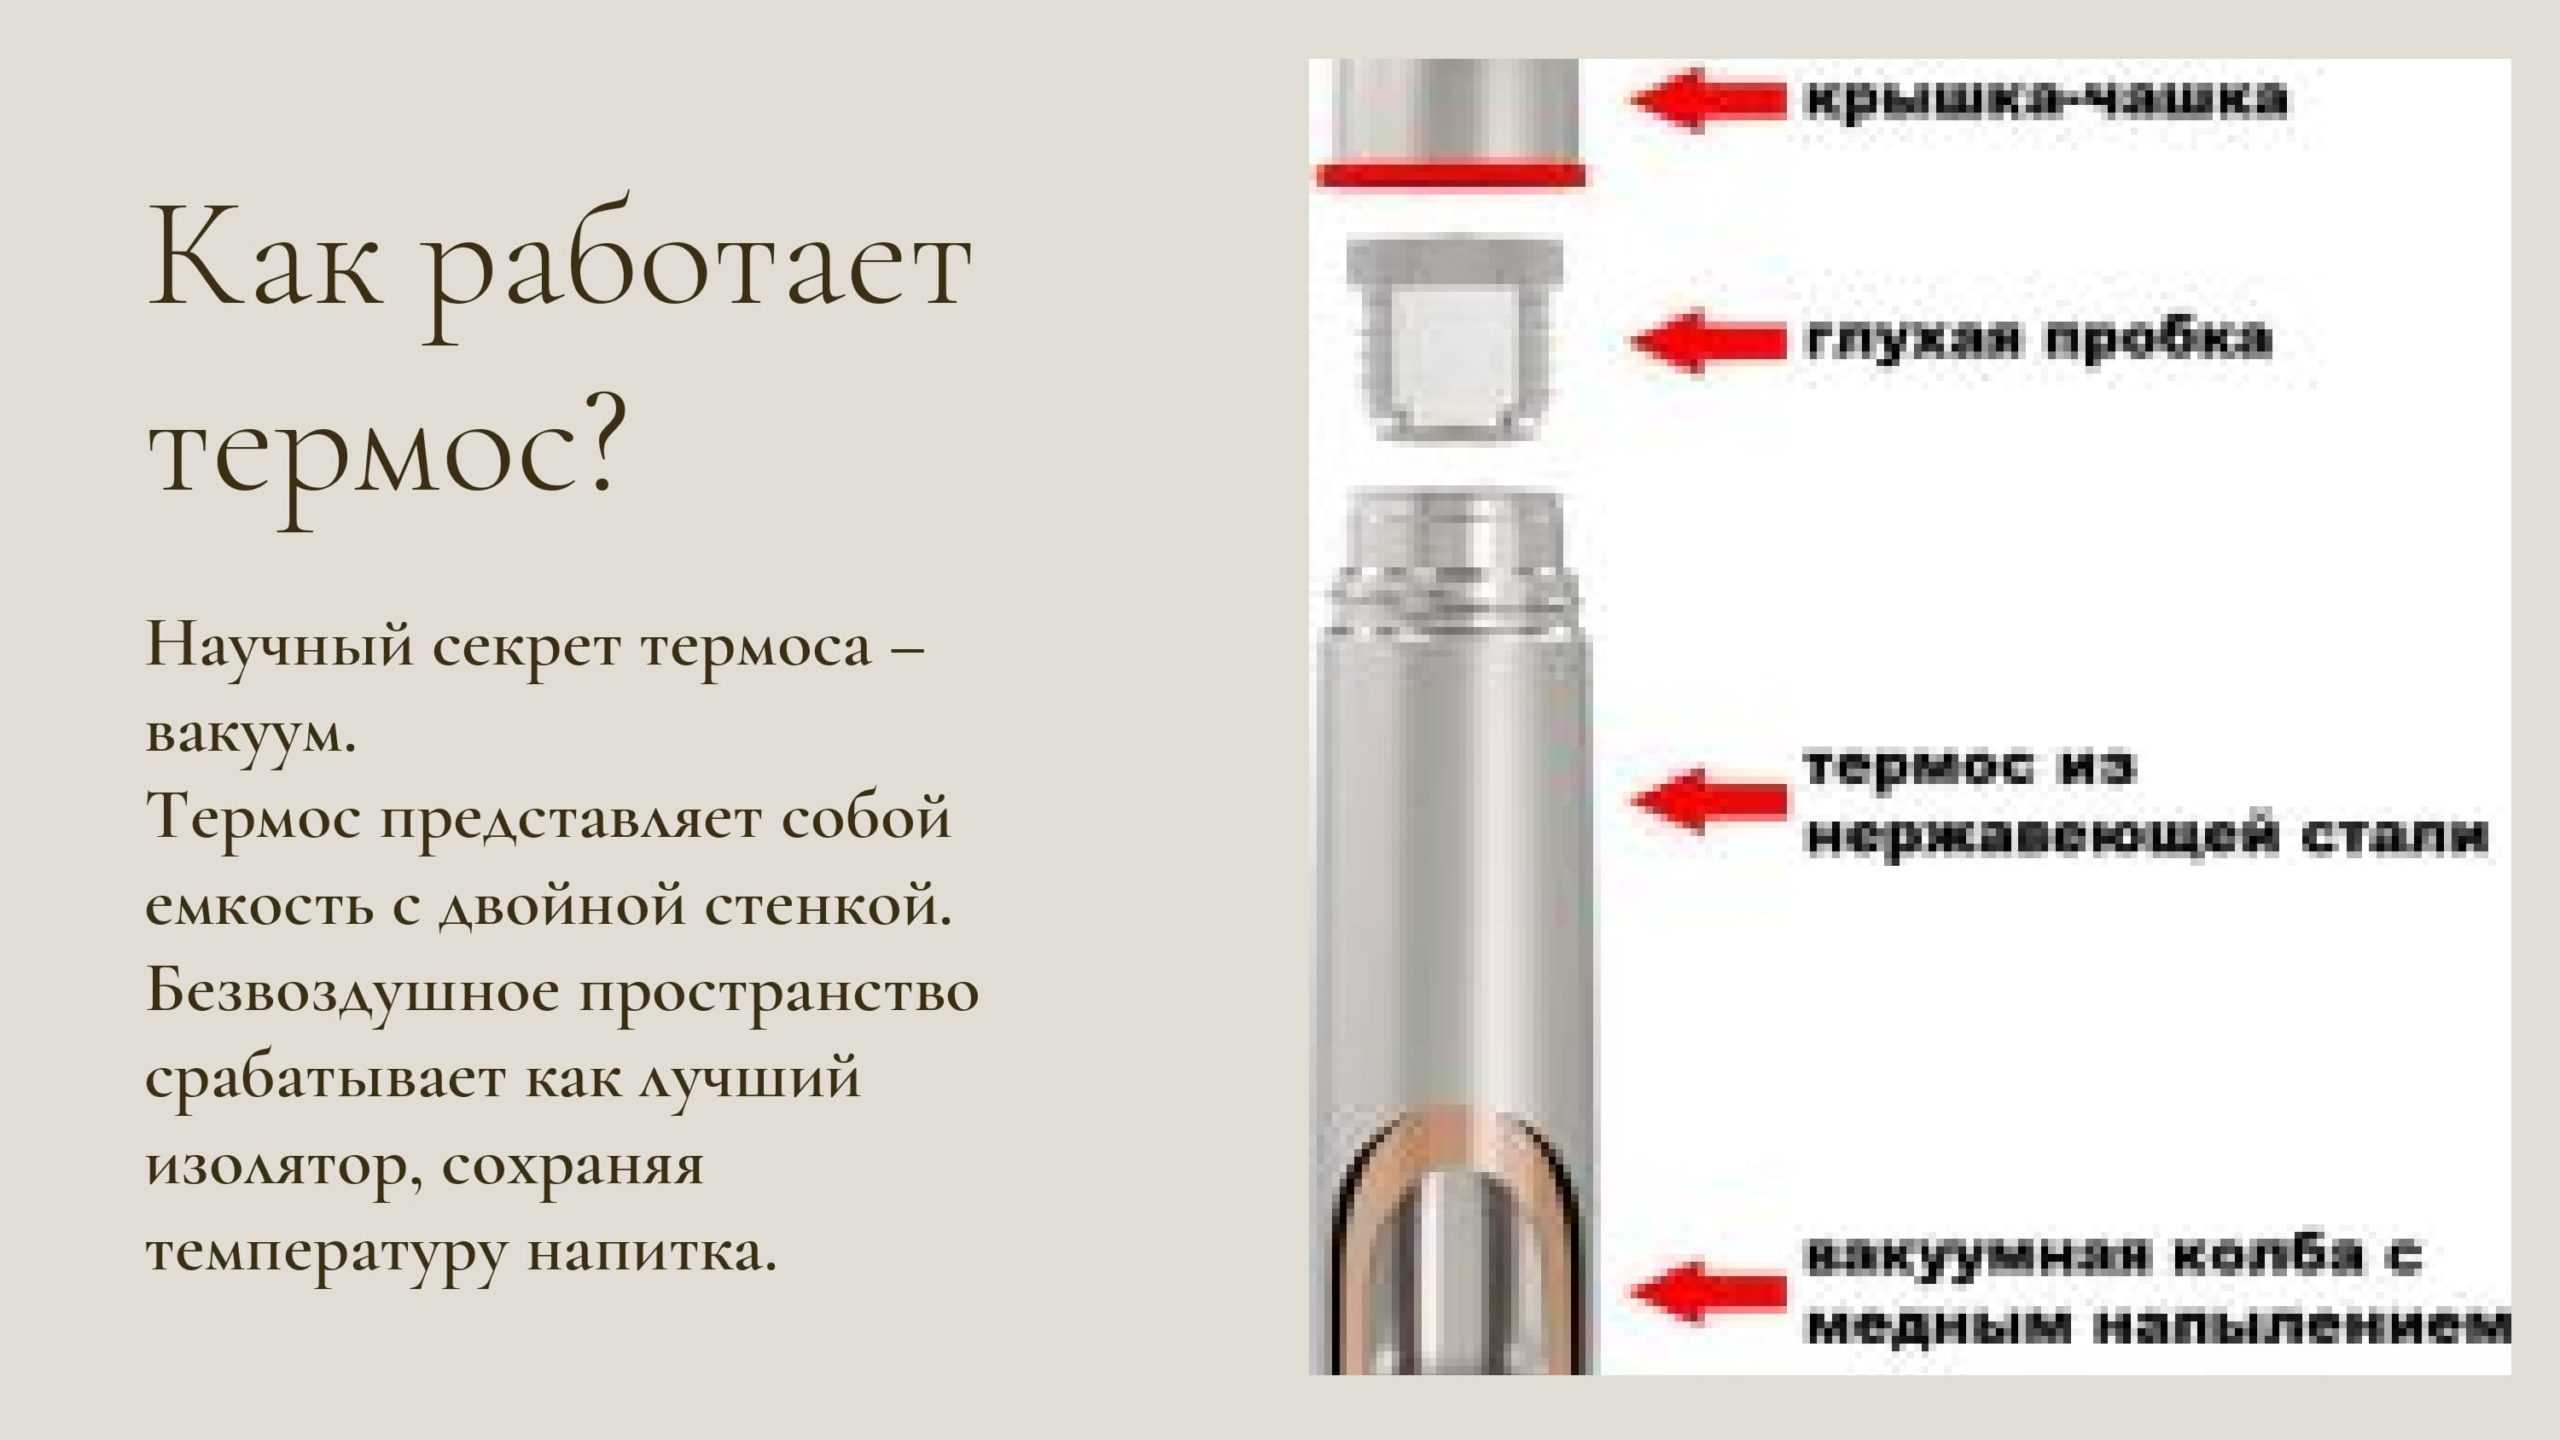 Как выбрать термос? какой фирмы термос выбрать? :: businessman.ru